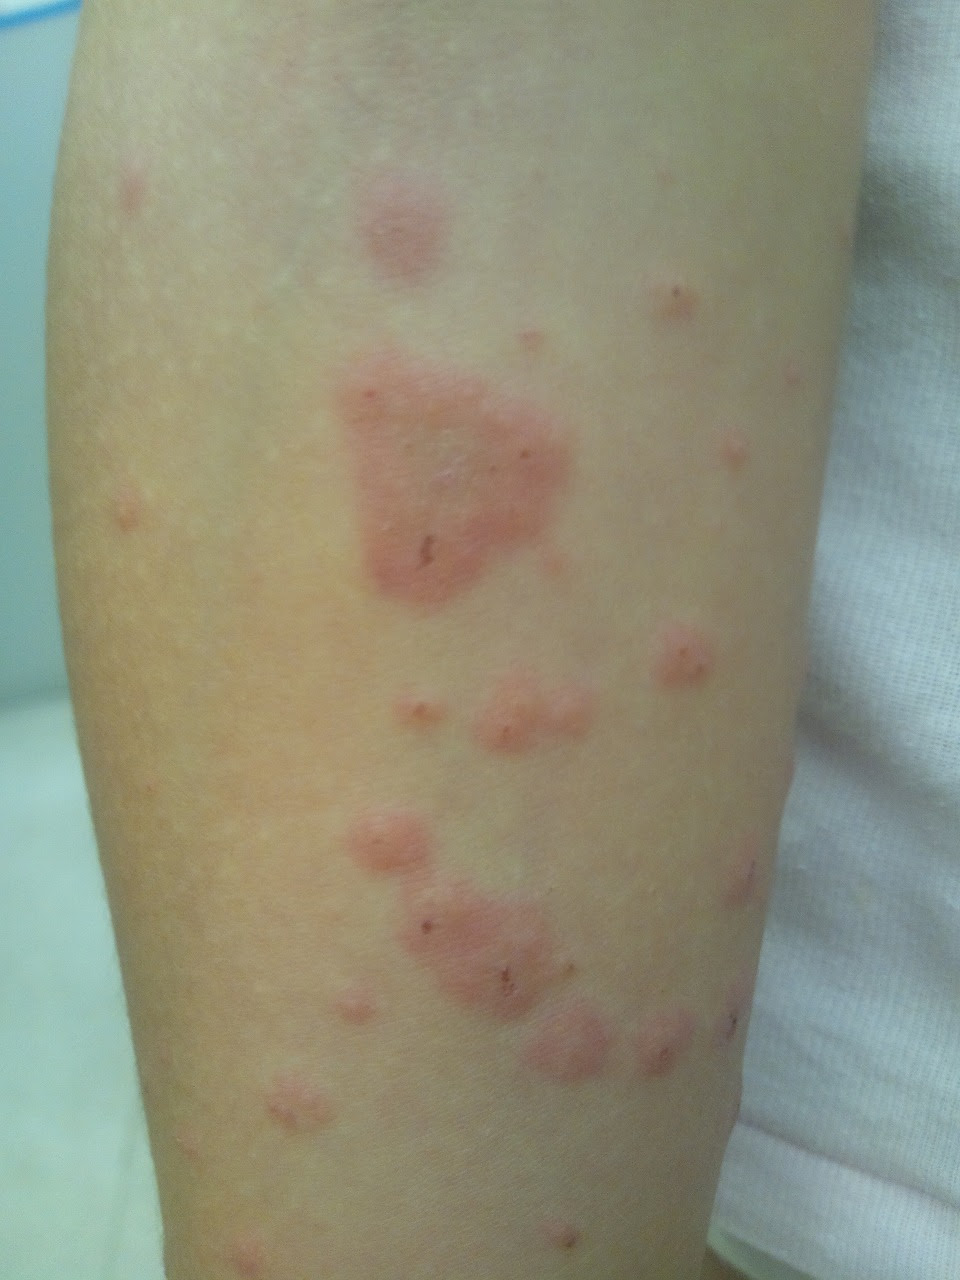 赤い 斑点 かゆく ない お腹 子どもの赤い発疹 熱なし かゆみなし 水いぼや突発性発疹かも 医師監修